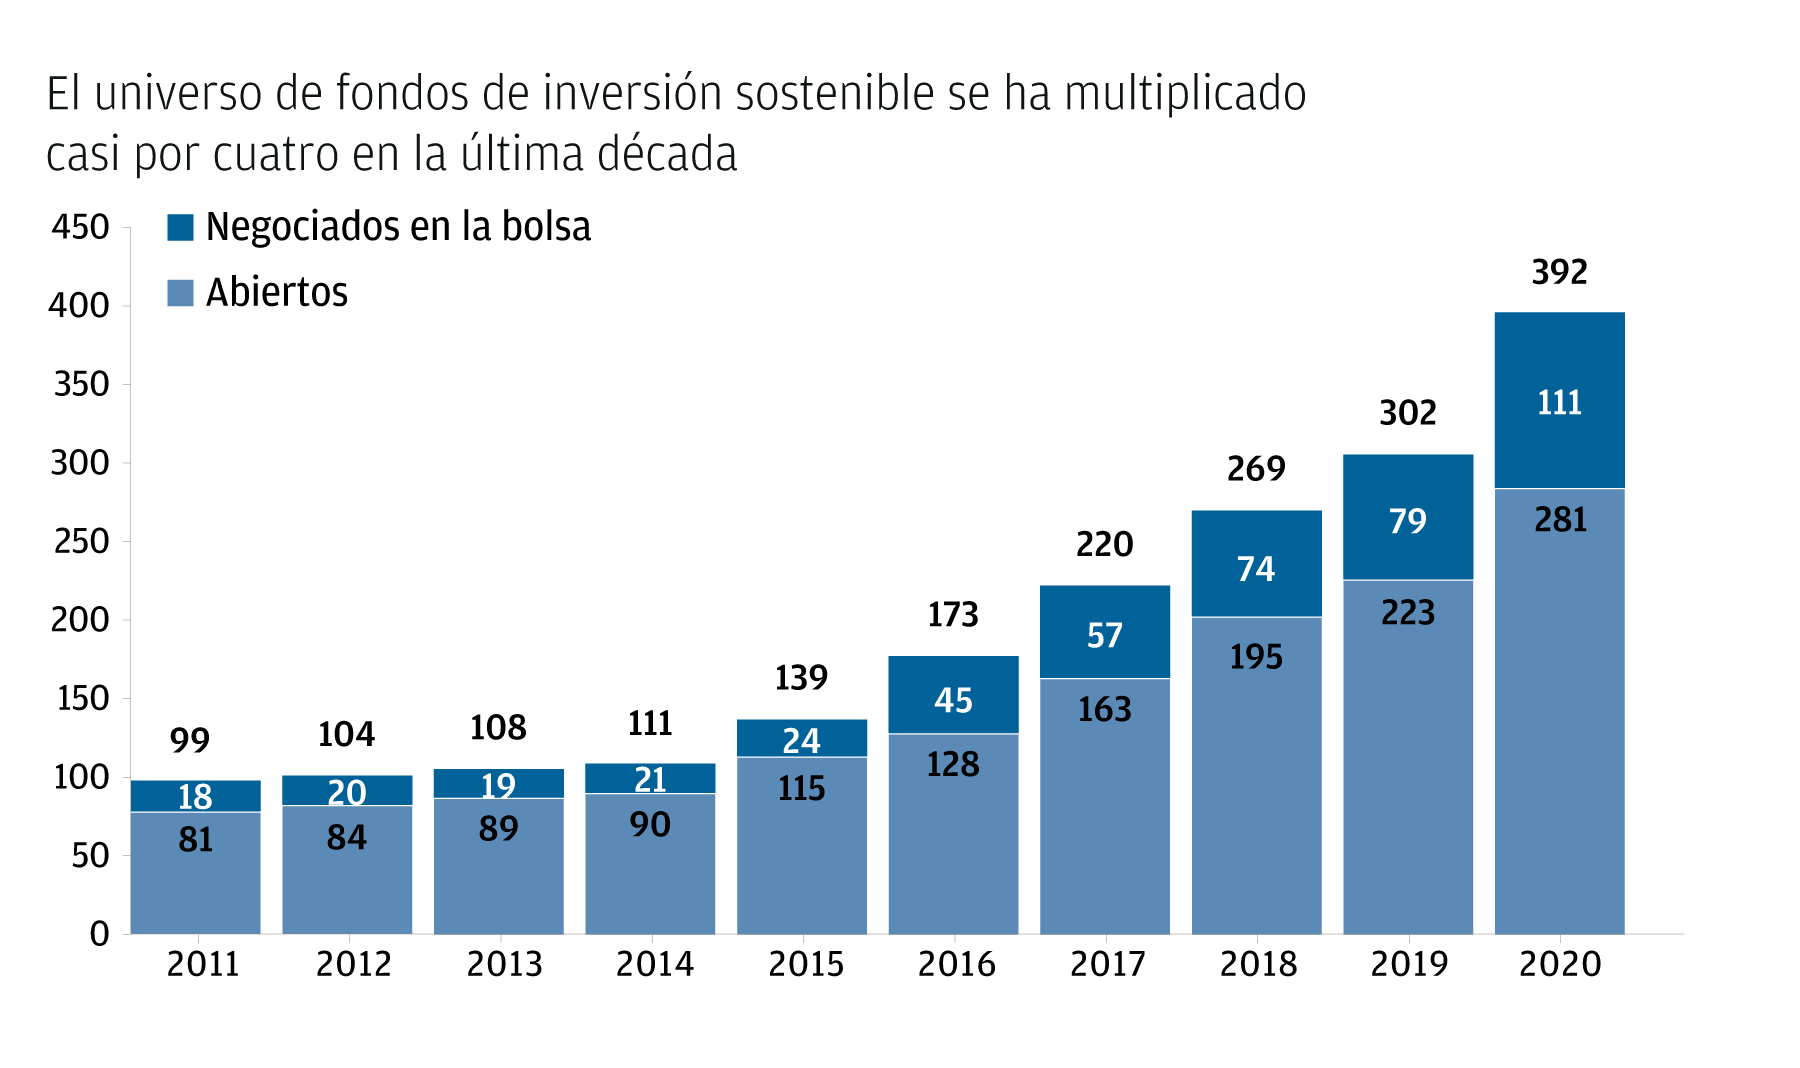 Chart 3: El universo de fondos de inversión sostenible se ha multiplicado casi por cuatro en la última década